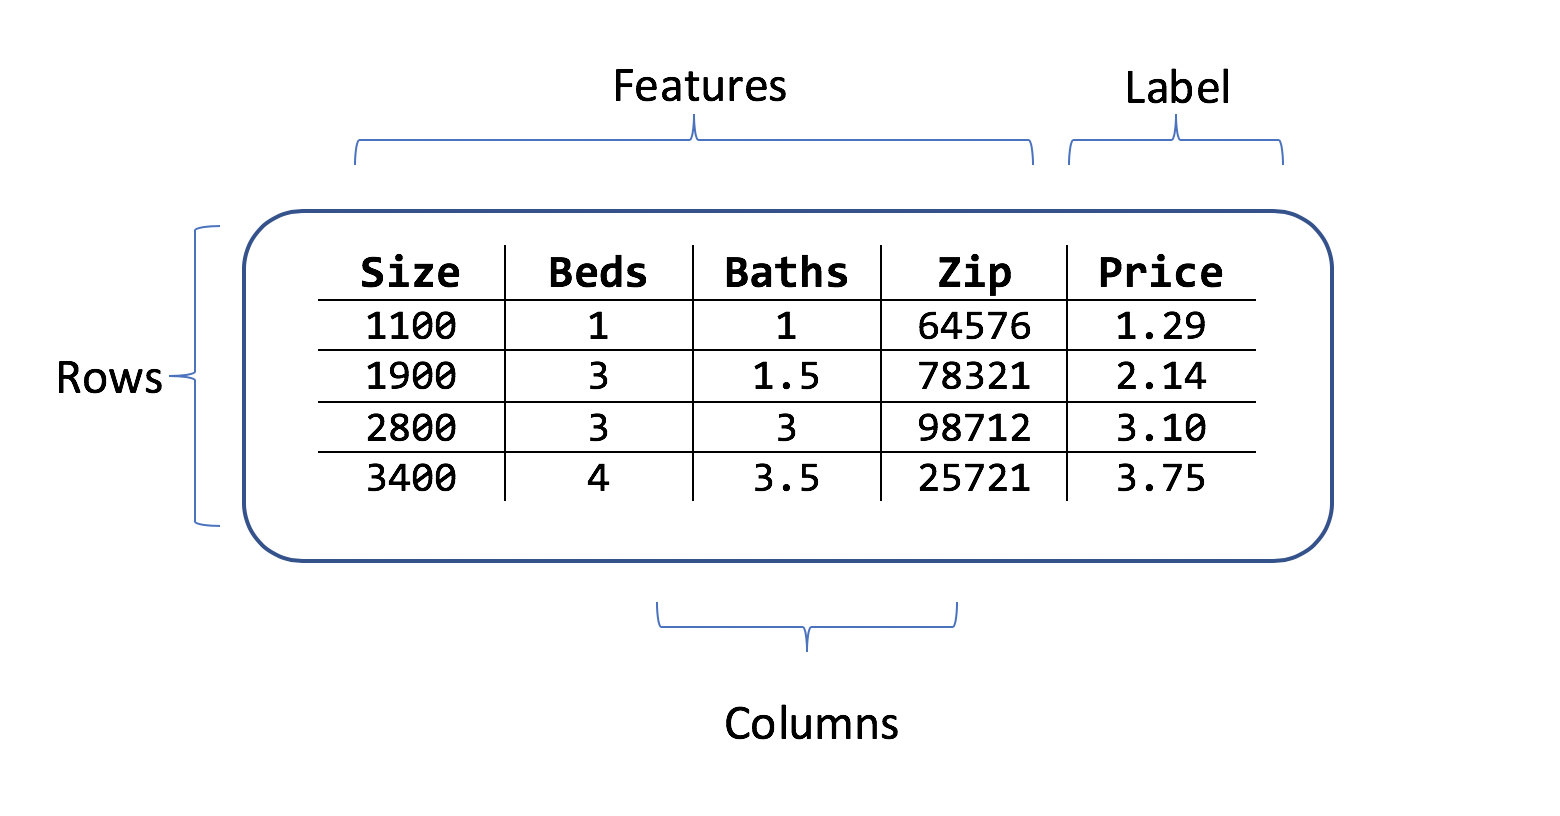 Tabella che mostra le righe e le colonne di dati sui prezzi delle case con le caratteristiche delle dimensioni dei locali, del codice postale e dell'etichetta del prezzo